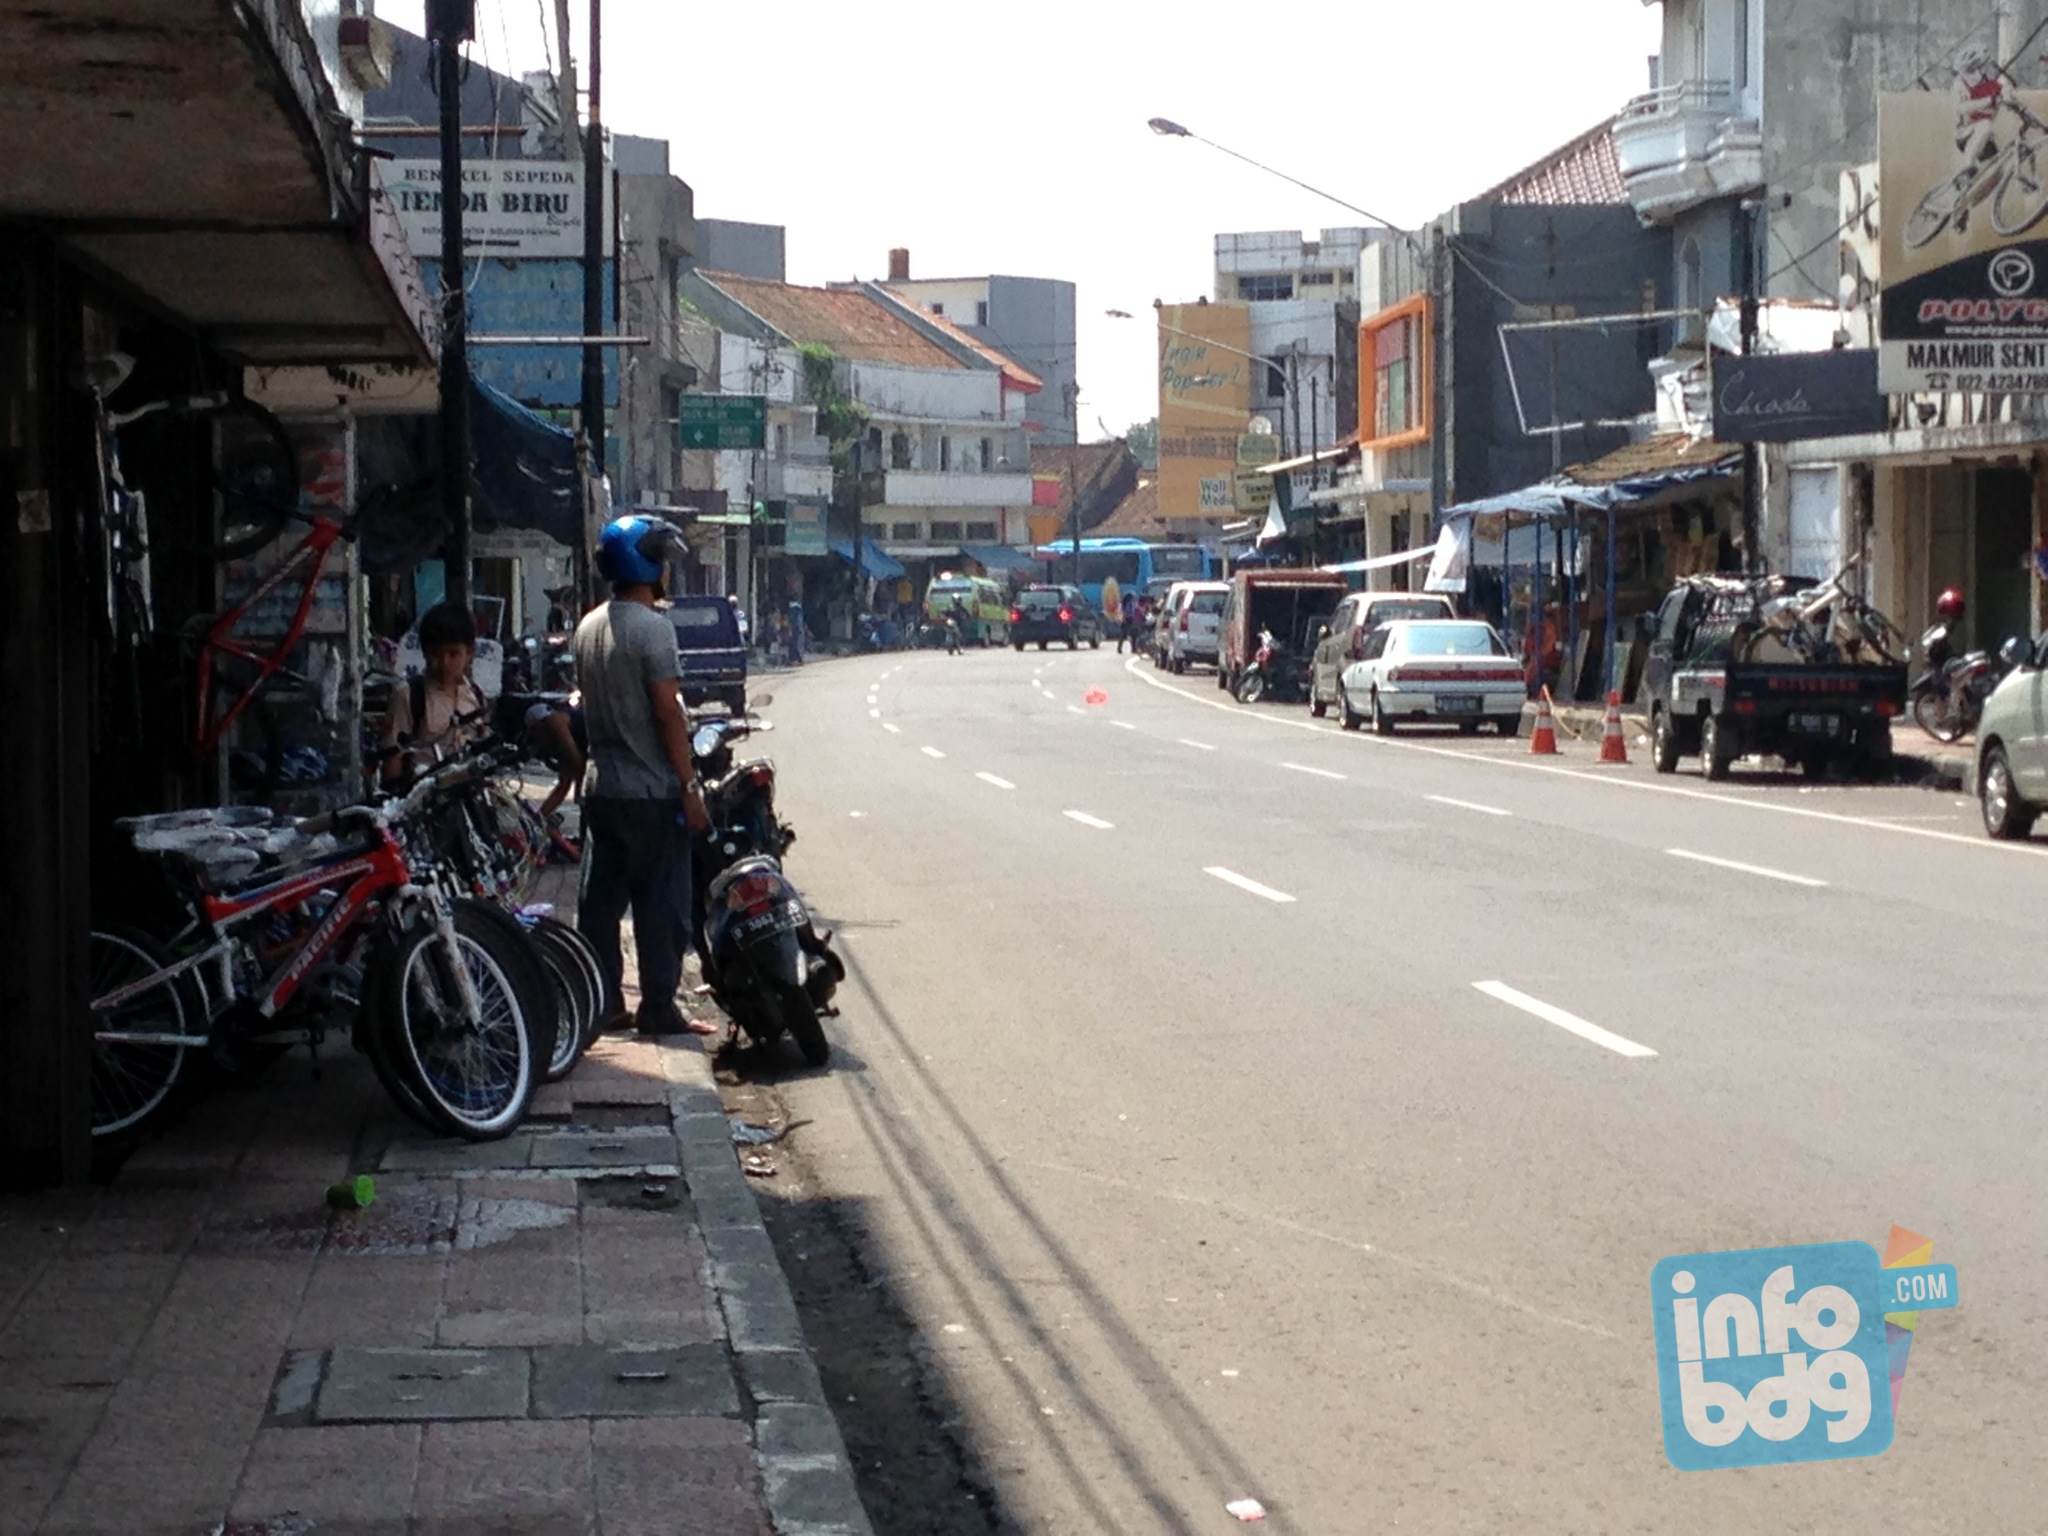 Disinilah Pusat  Sepeda  Bengkel Sepeda  di  Kota Bandung  